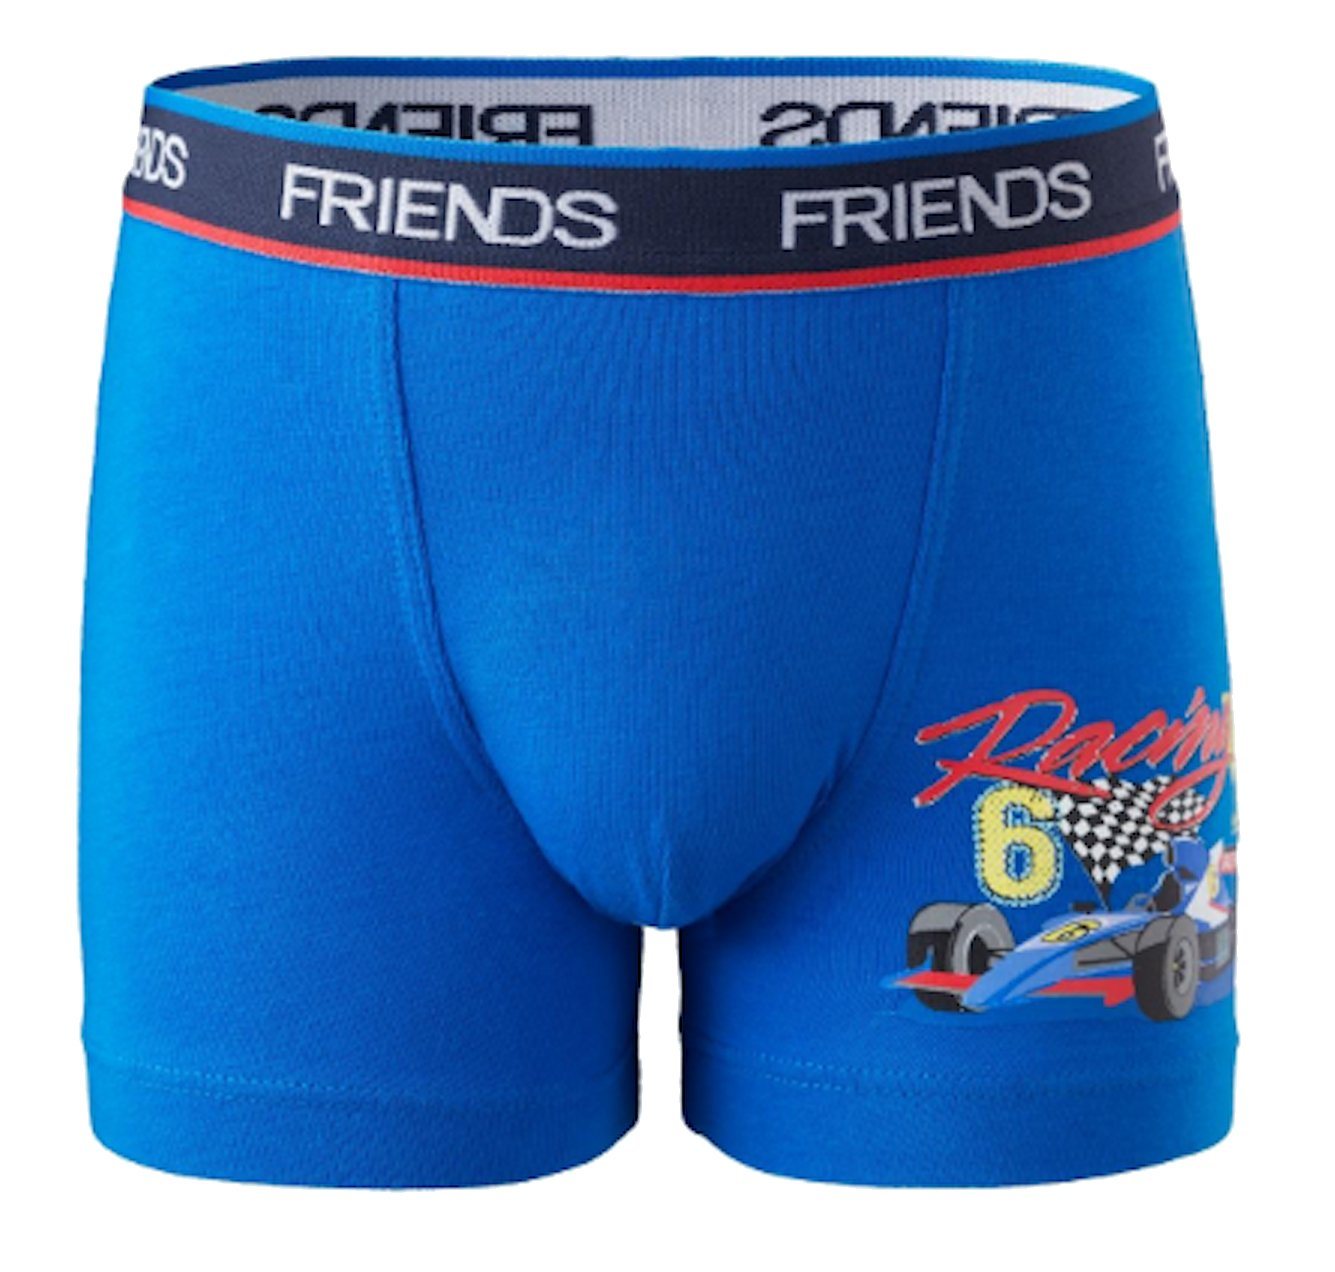 Friends Boxershorts FRIENDS Jungen Boxershorts Rennwagen Shorts Unterhose blau von Friends